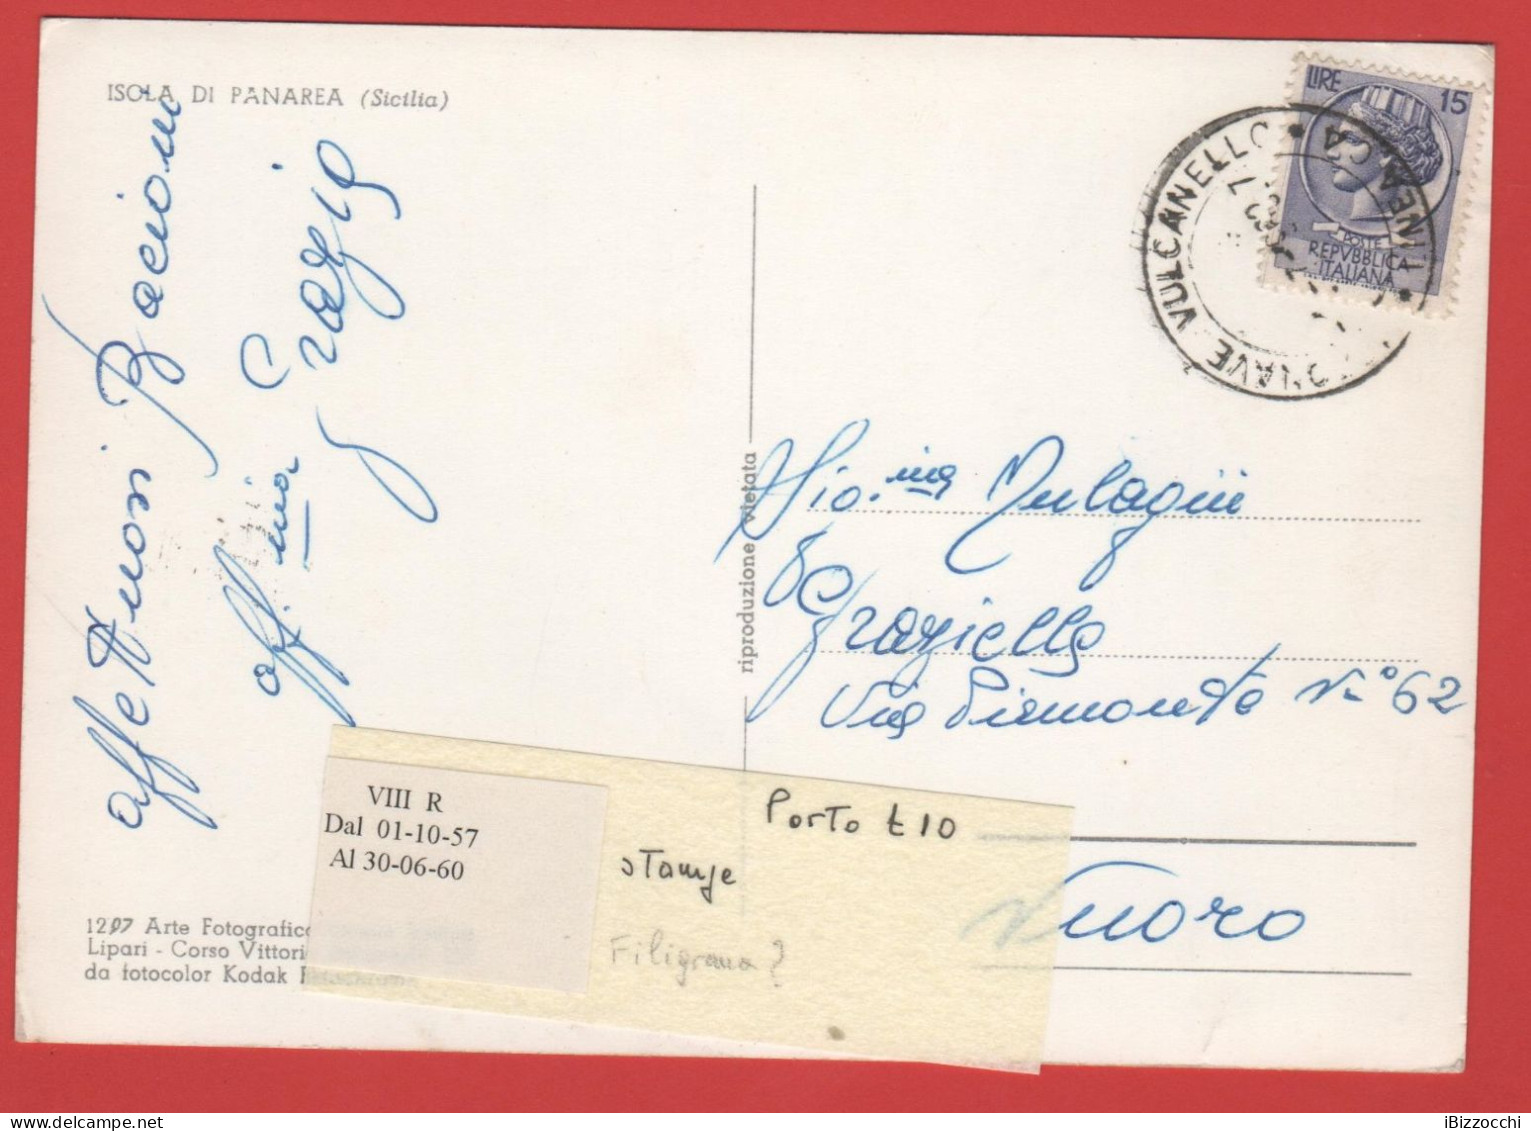 ITALIA - Storia Postale Repubblica - 1958 -  15 Antica Moneta Siracusana - Cartolina Dell'Isola Di Panarea  - Viaggiata - 1946-60: Marcophilia